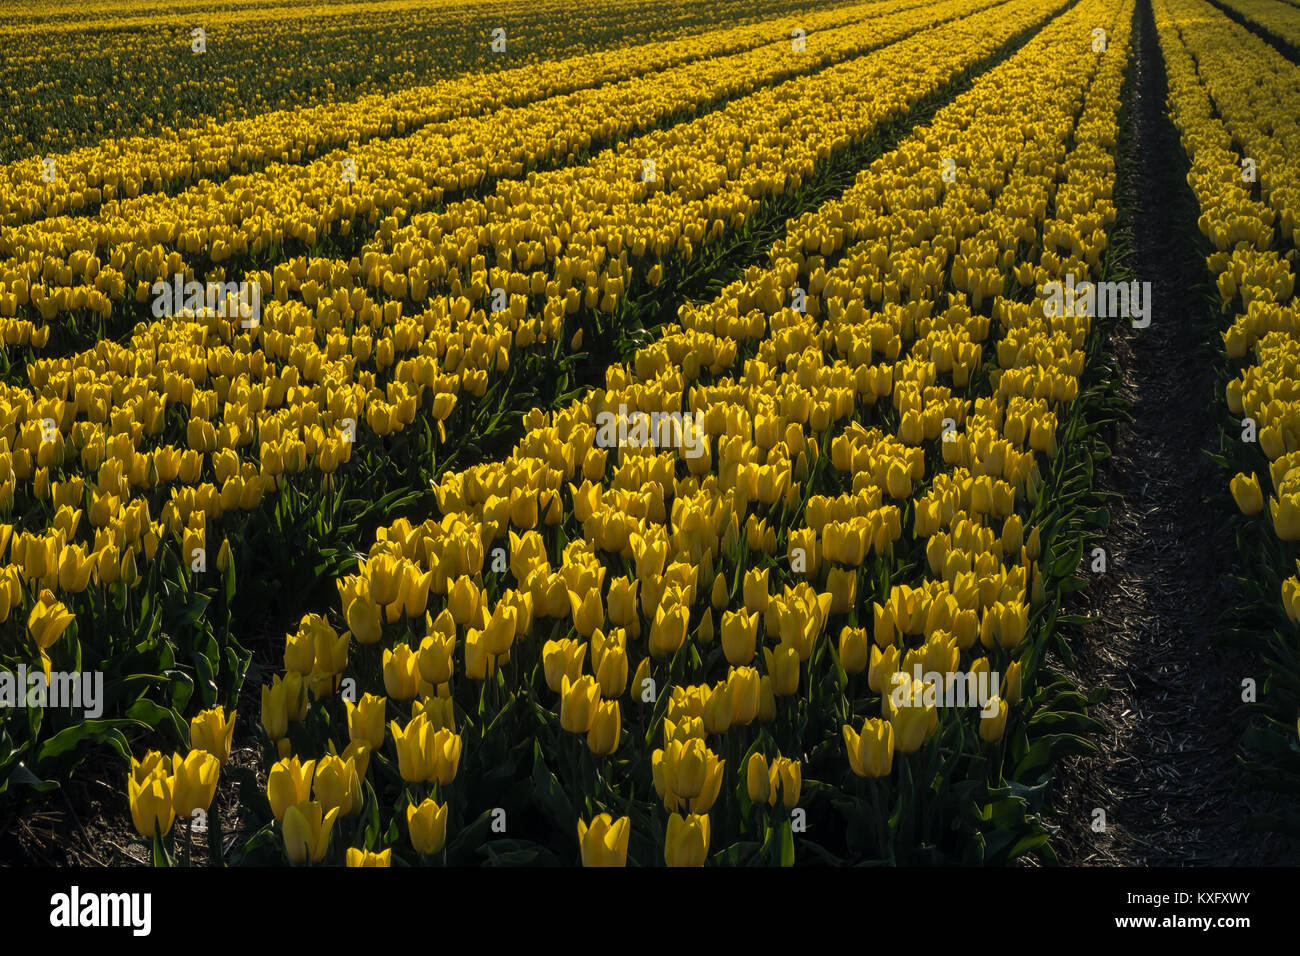 Field full of yellow tulips. Stock Photo